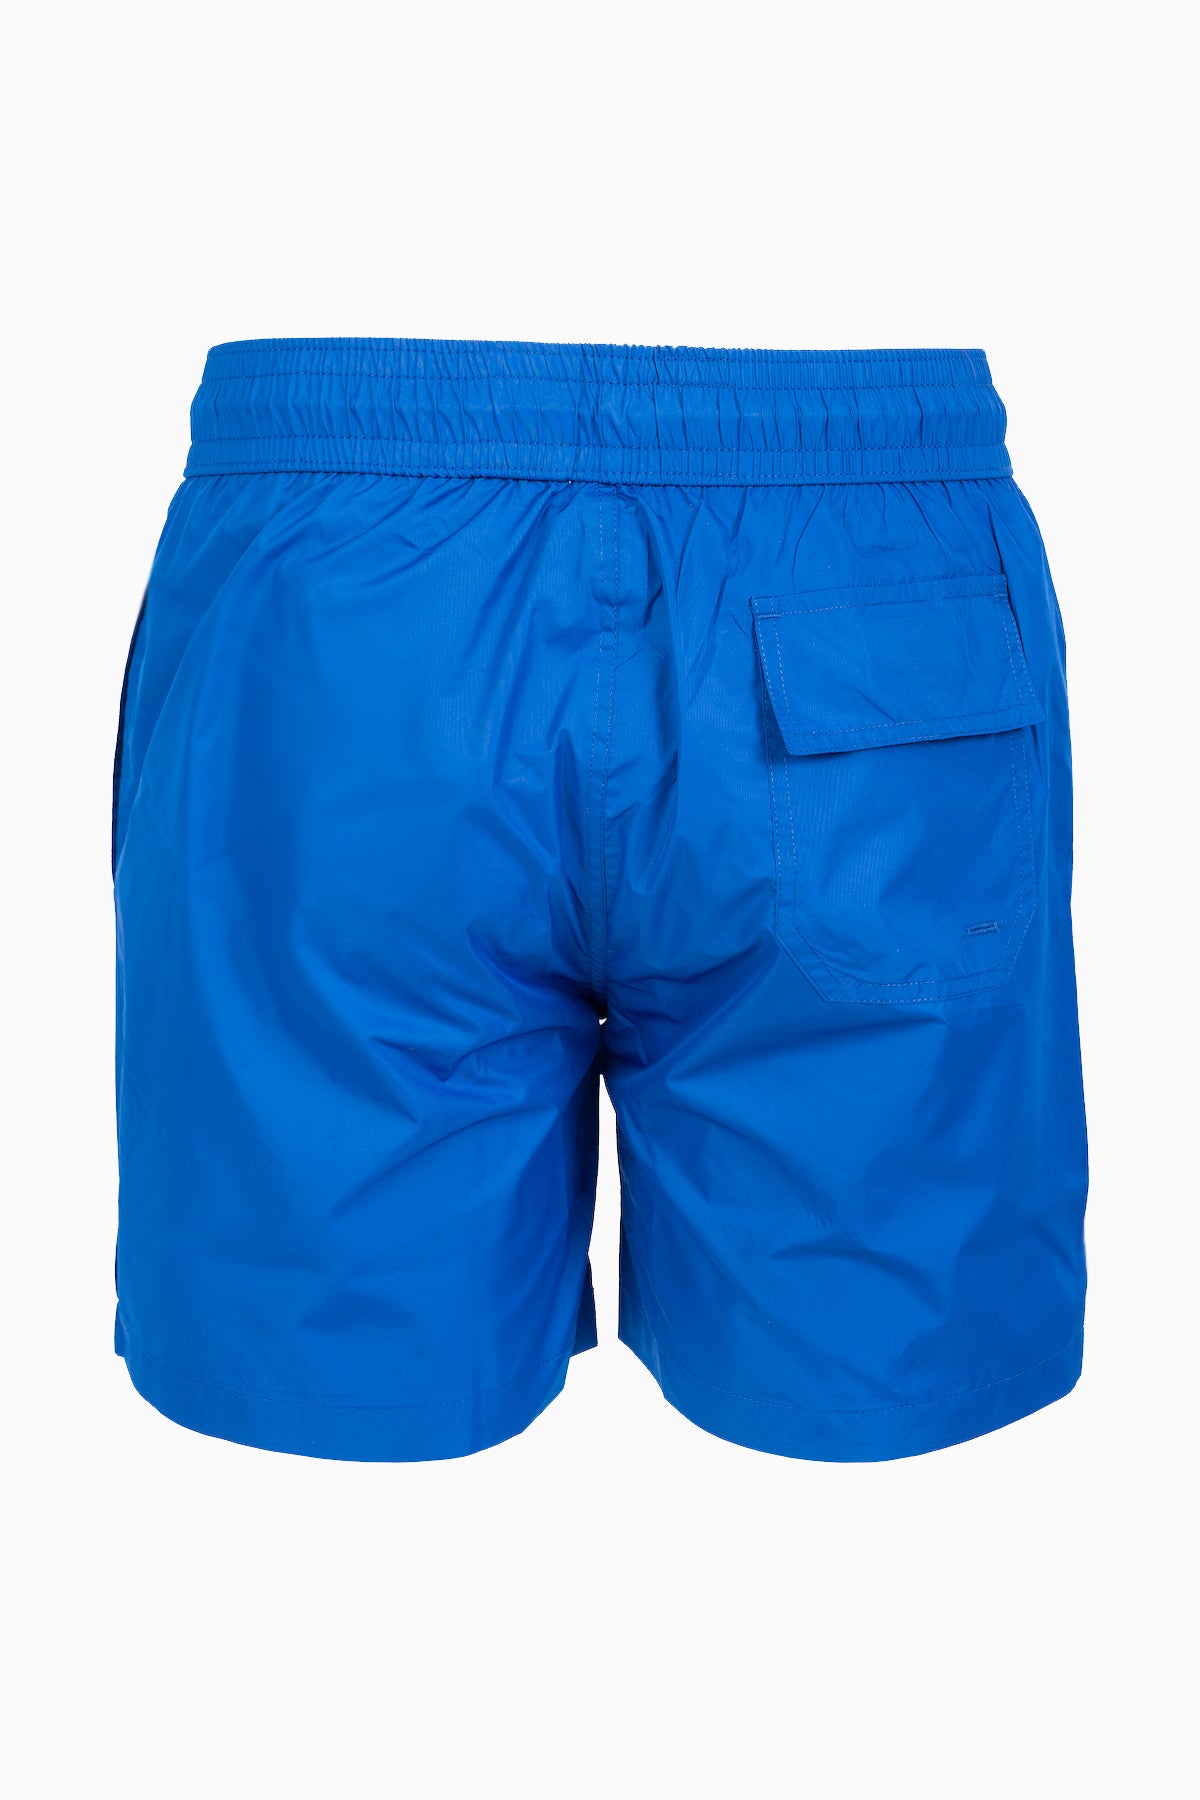 Pantaloncino Uomo - Blu Royal